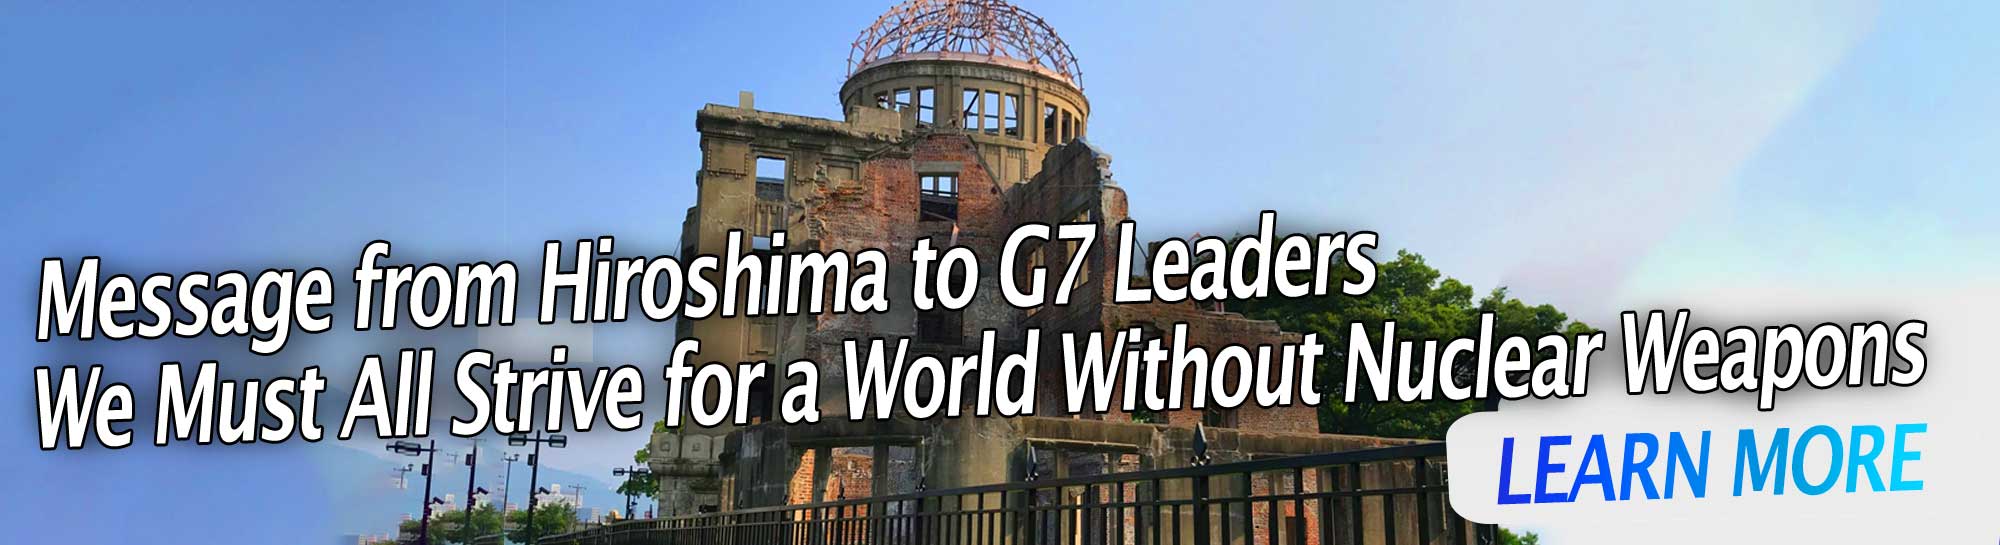 Hirosimas vēstījums G7 vadītājiem: mums visiem jātiecas uz pasauli bez kodolieročiem